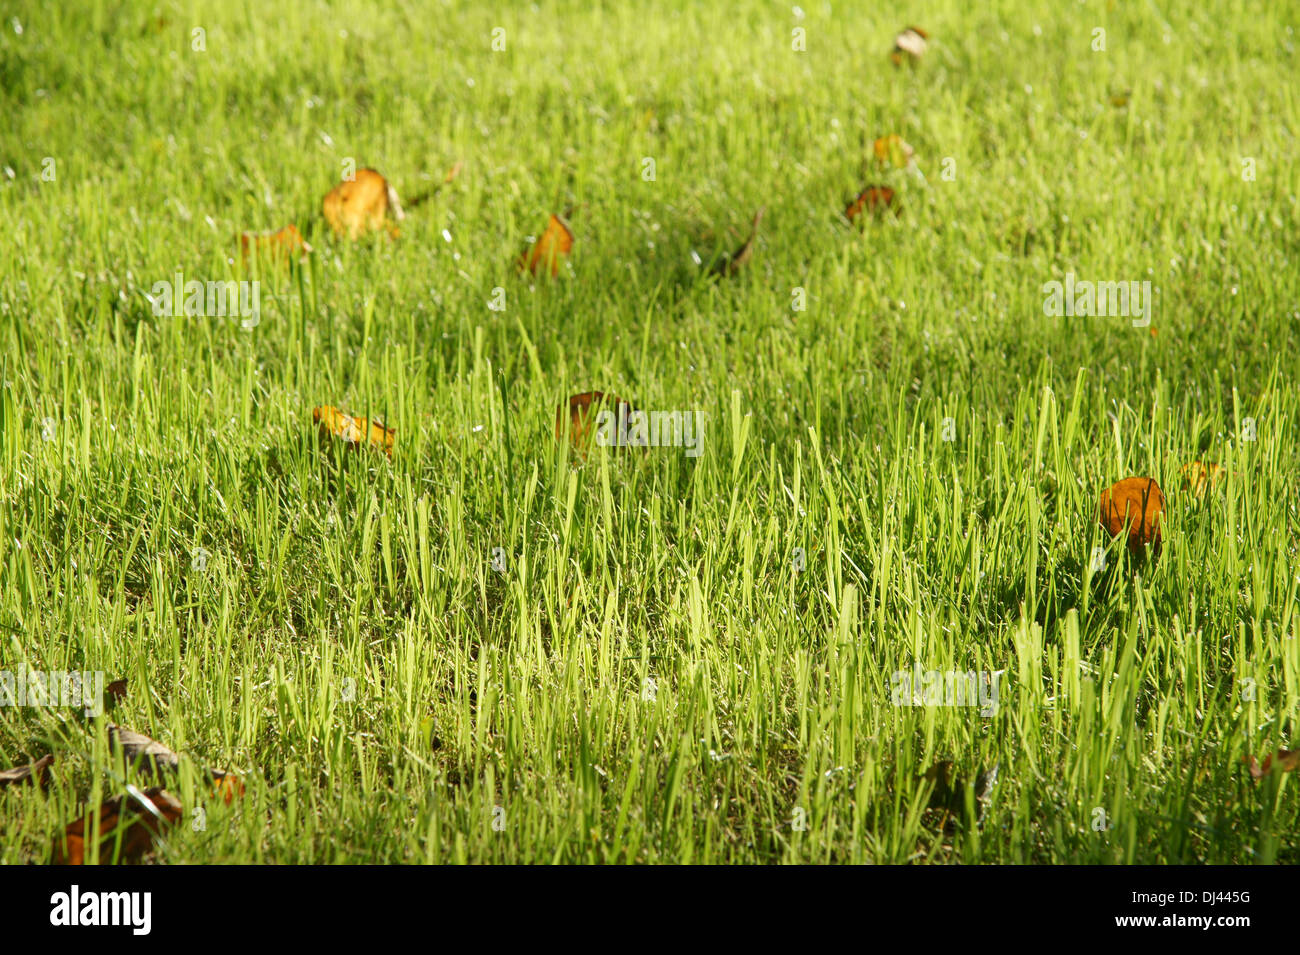 Rasen, lawn Stock Photo